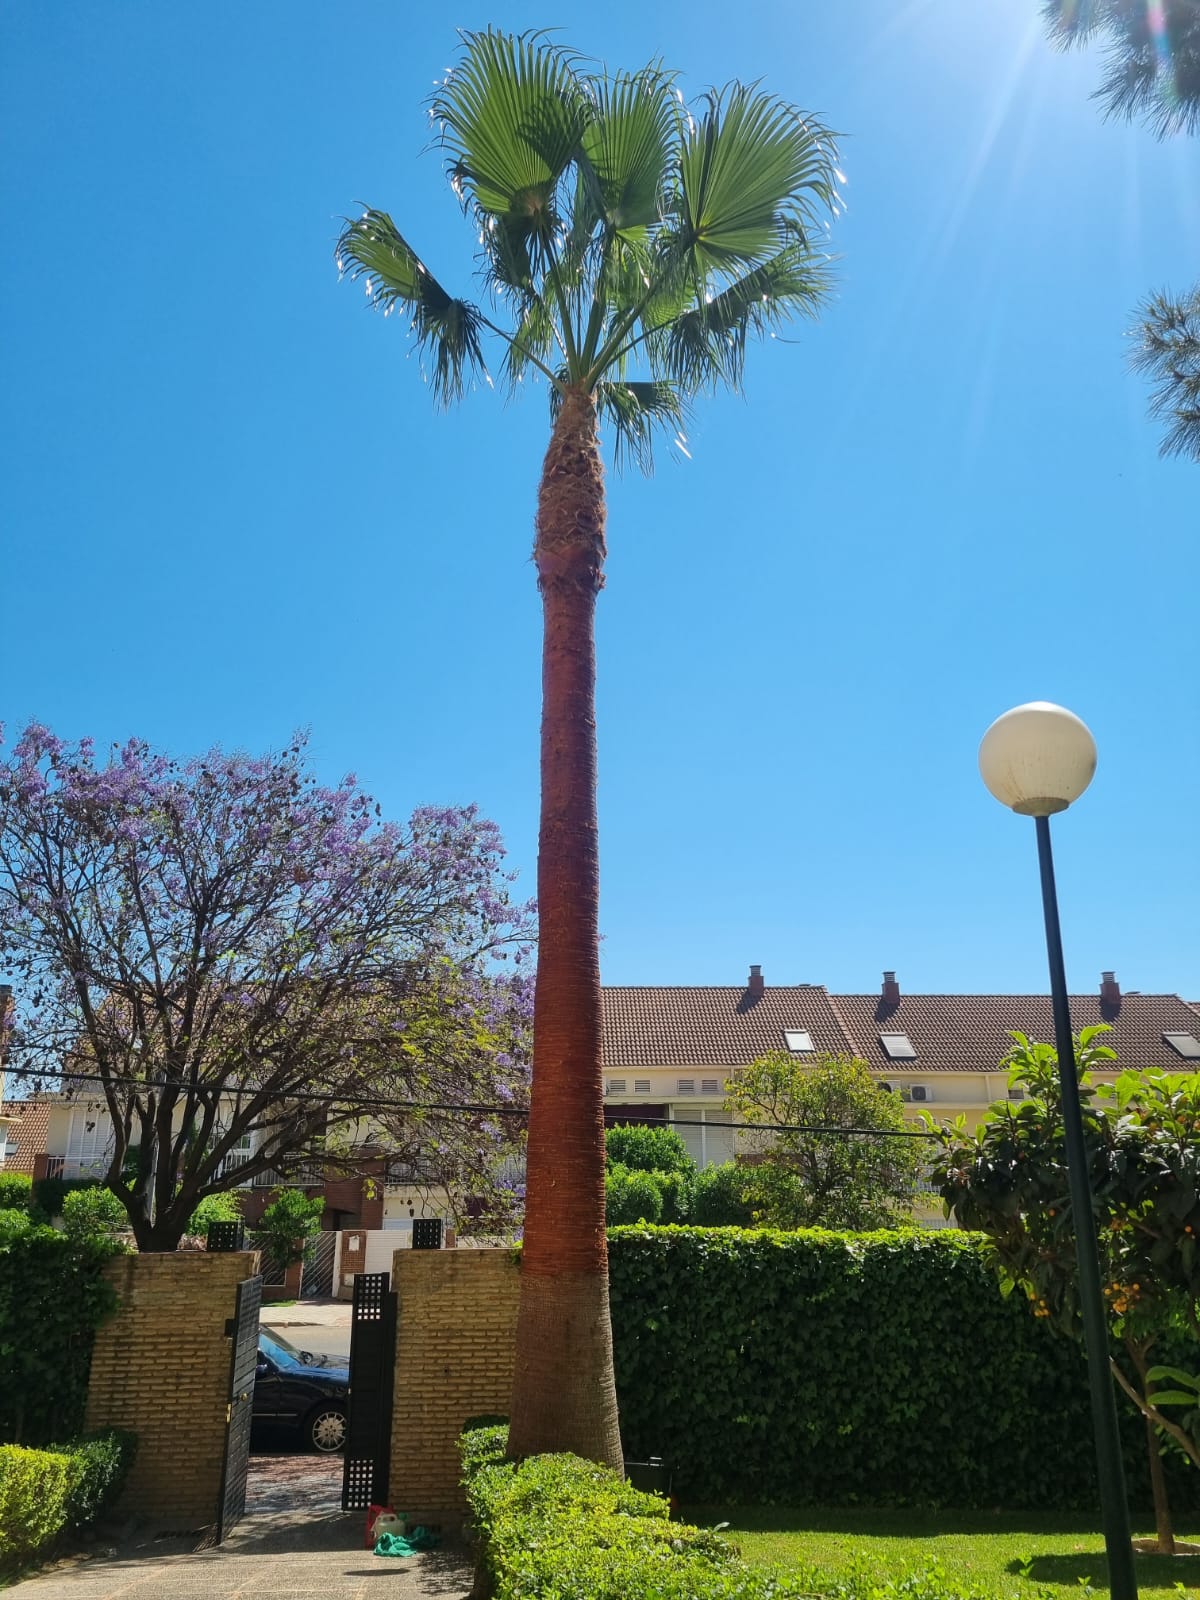 Poda de palmeras Washingtonia en Sevilla - Jardines y Paisajes